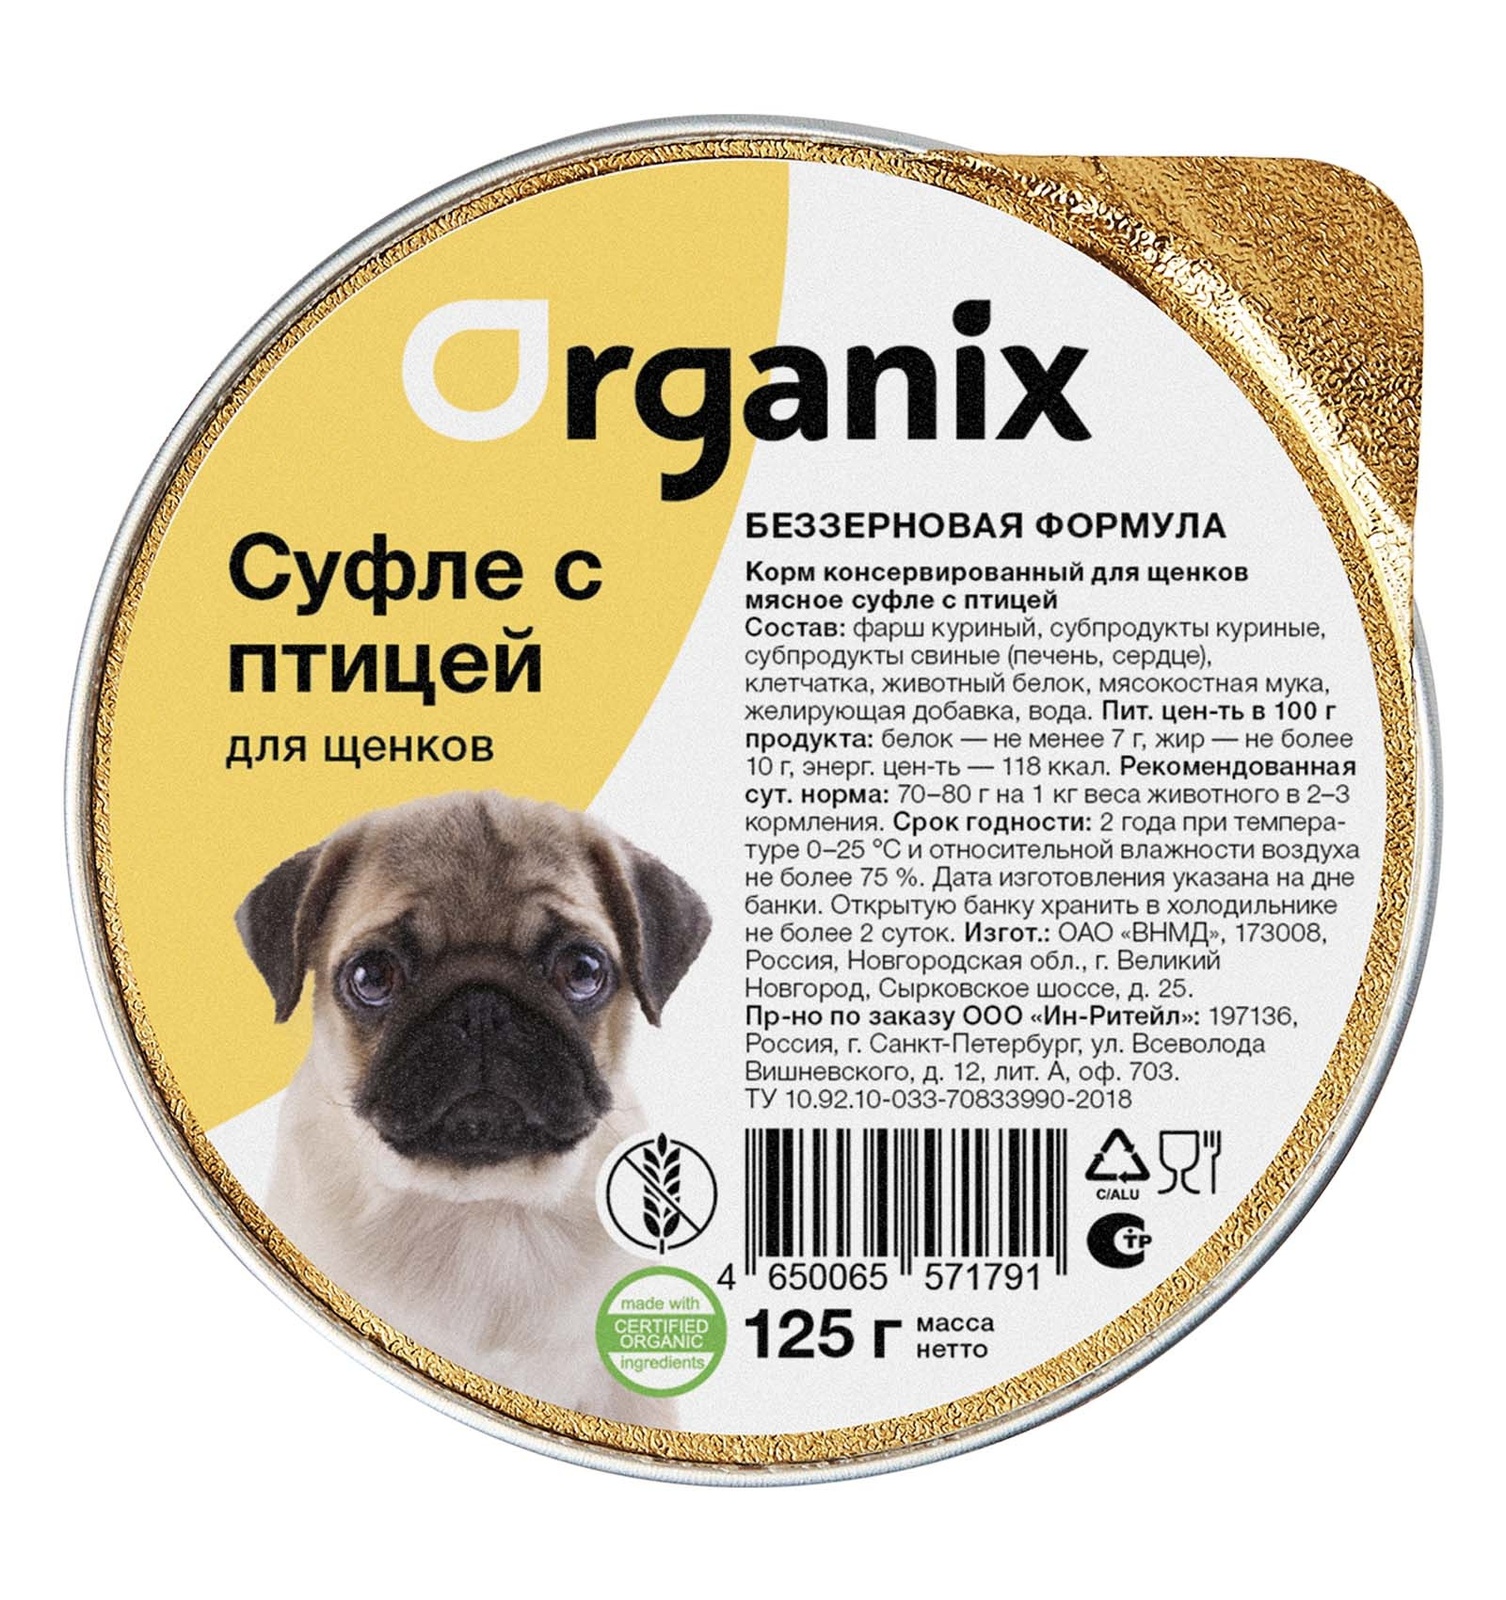 Organix консервы Organix мясное суфле для щенков, с птицей (125 г)